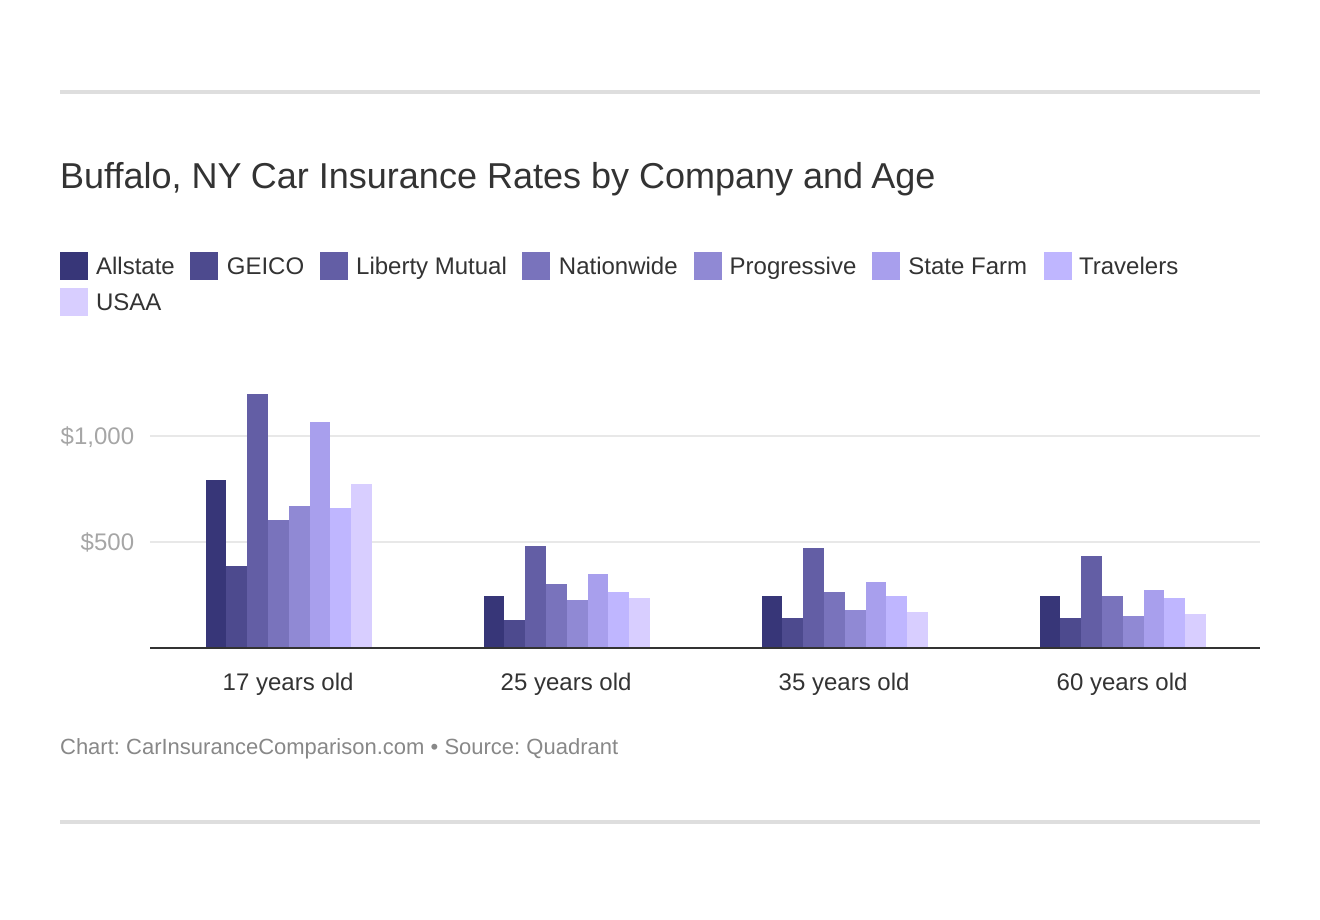 Buffalo, NY Car Insurance Rates by Company and Age